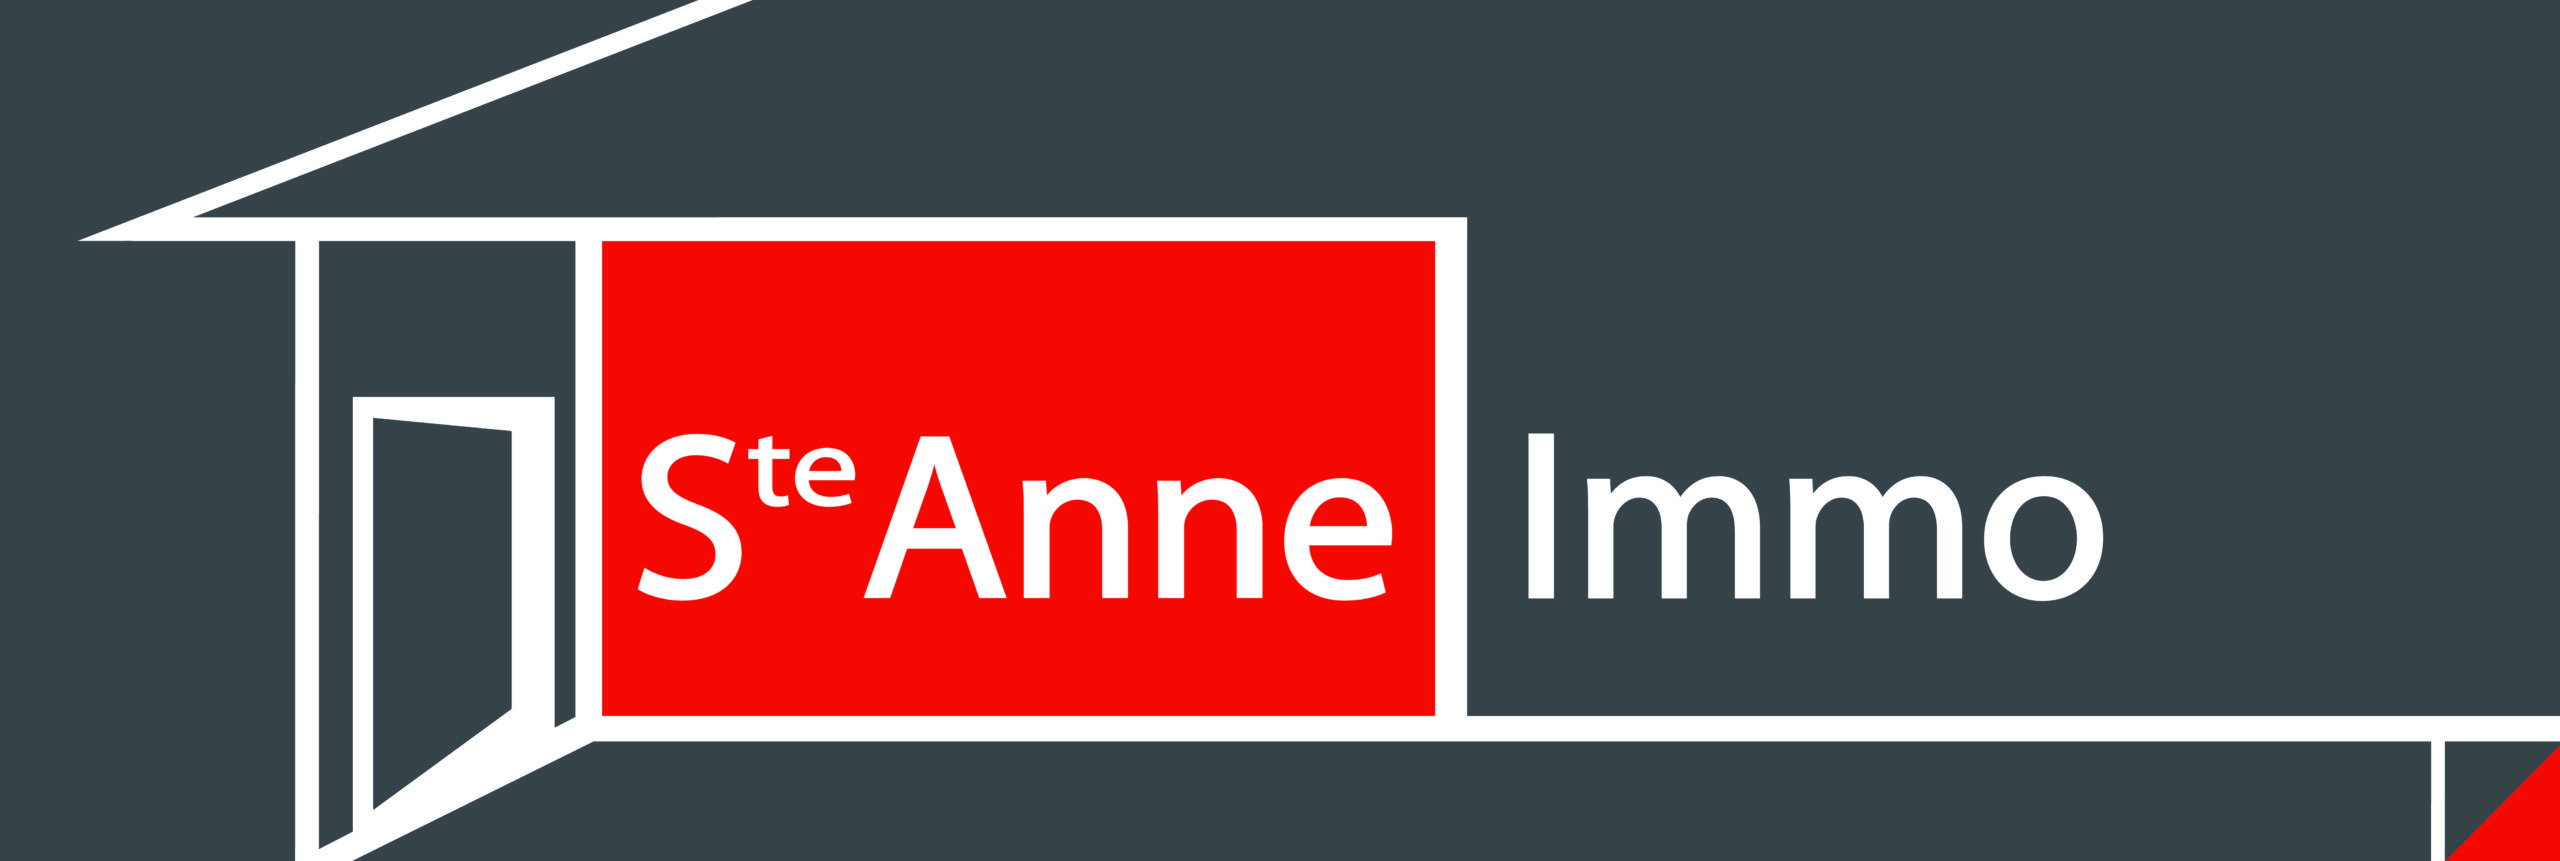 Immo80 – L'immobilier à Amiens et dans la Somme-SAINTE ANNE IMMO 